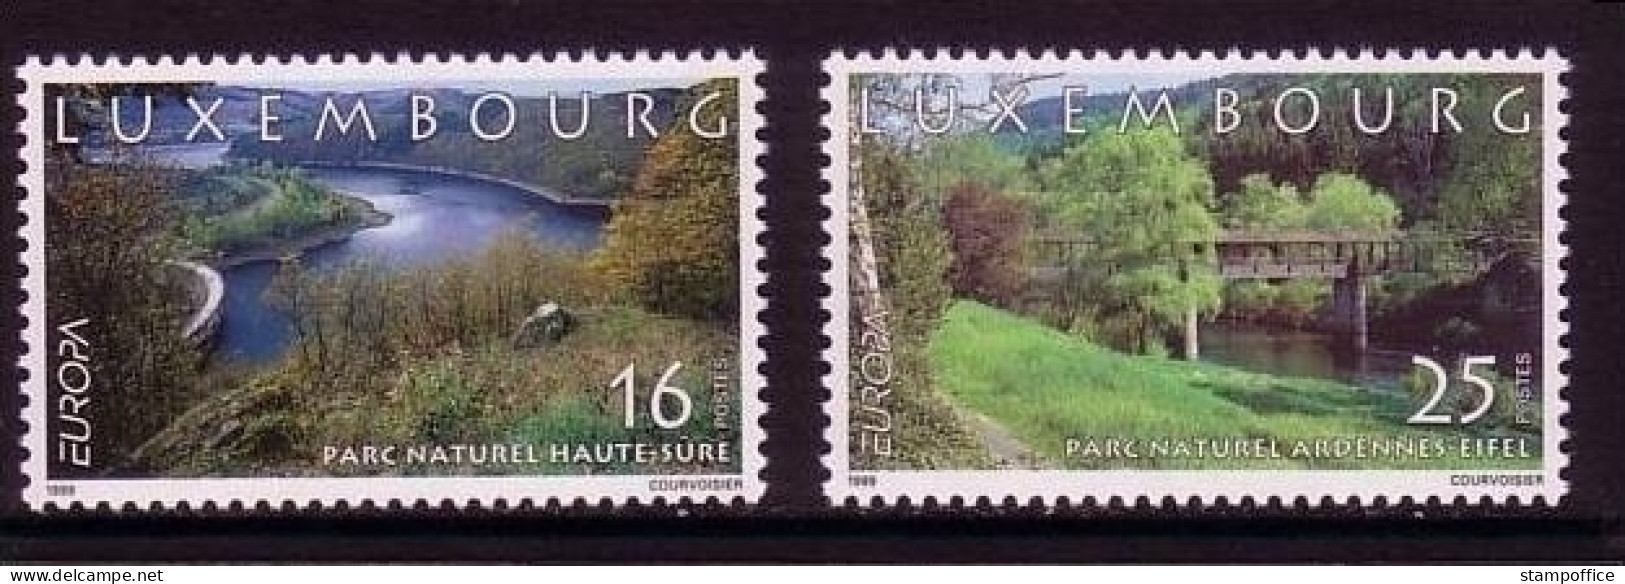 LUXEMBOURG MI-NR. 1472-1473 POSTFRISCH(MINT) EUROPA 1999 NATUR- Und NATIONALPARKS - 1999